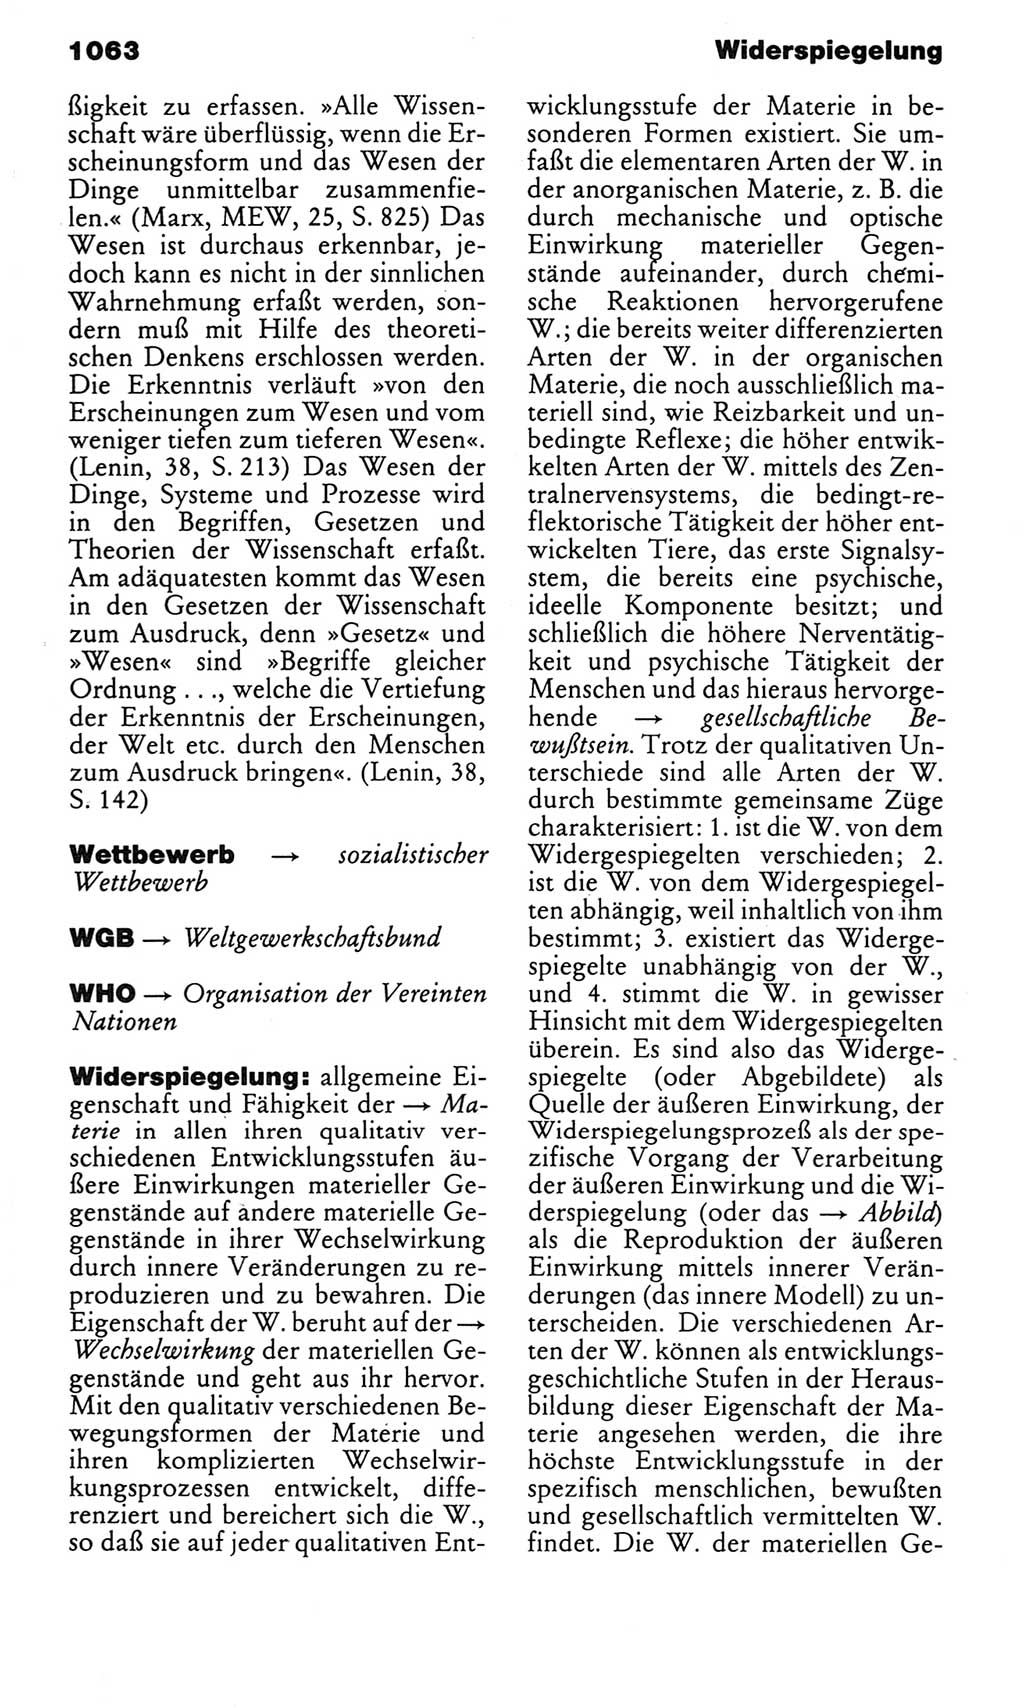 Kleines politisches Wörterbuch [Deutsche Demokratische Republik (DDR)] 1983, Seite 1063 (Kl. pol. Wb. DDR 1983, S. 1063)